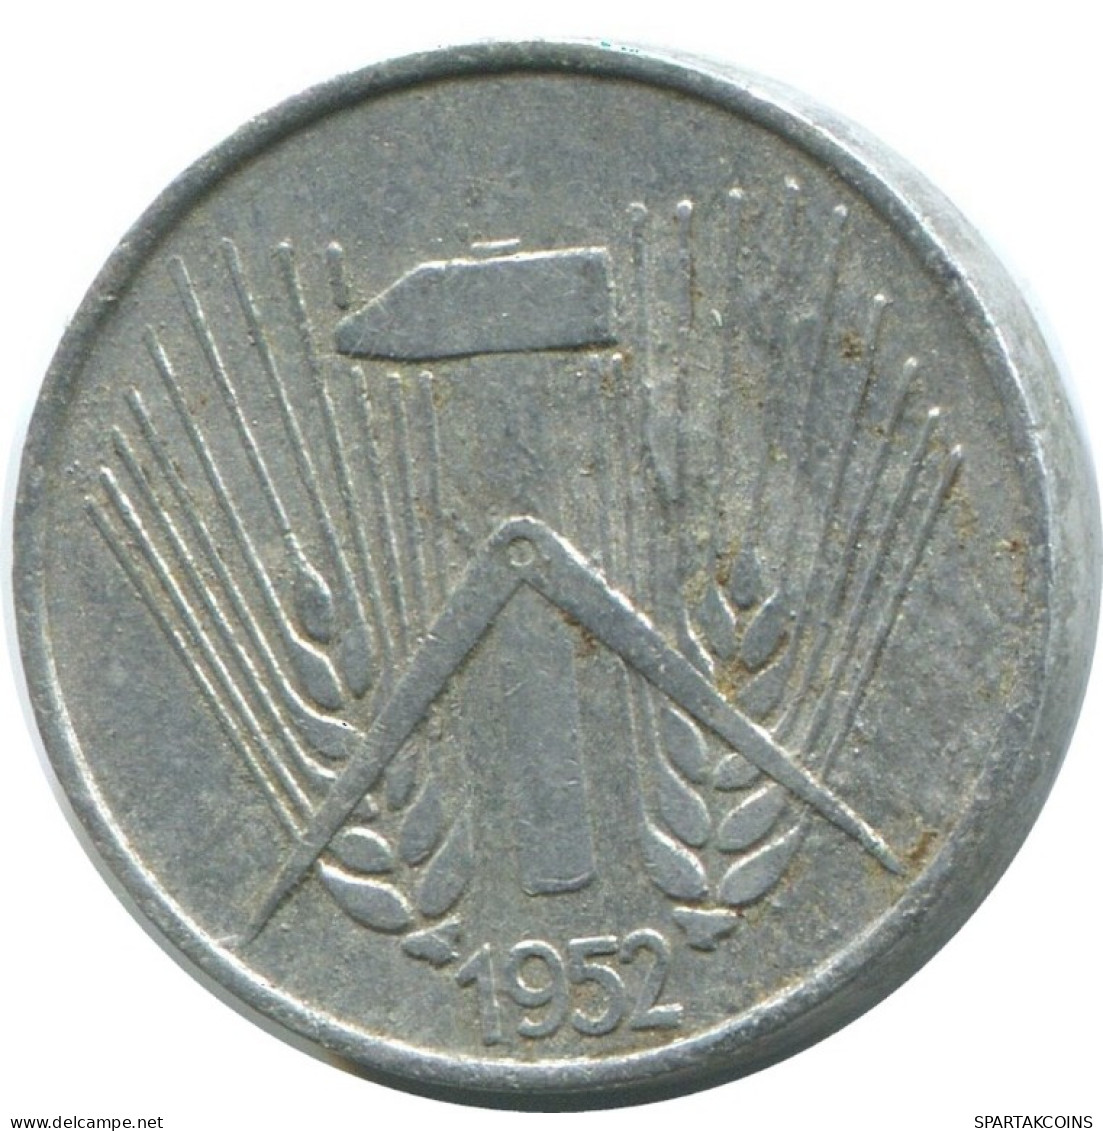 1 PFENNIG 1952 A DDR EAST ALEMANIA Moneda GERMANY #AD784.9.E.A - 1 Pfennig